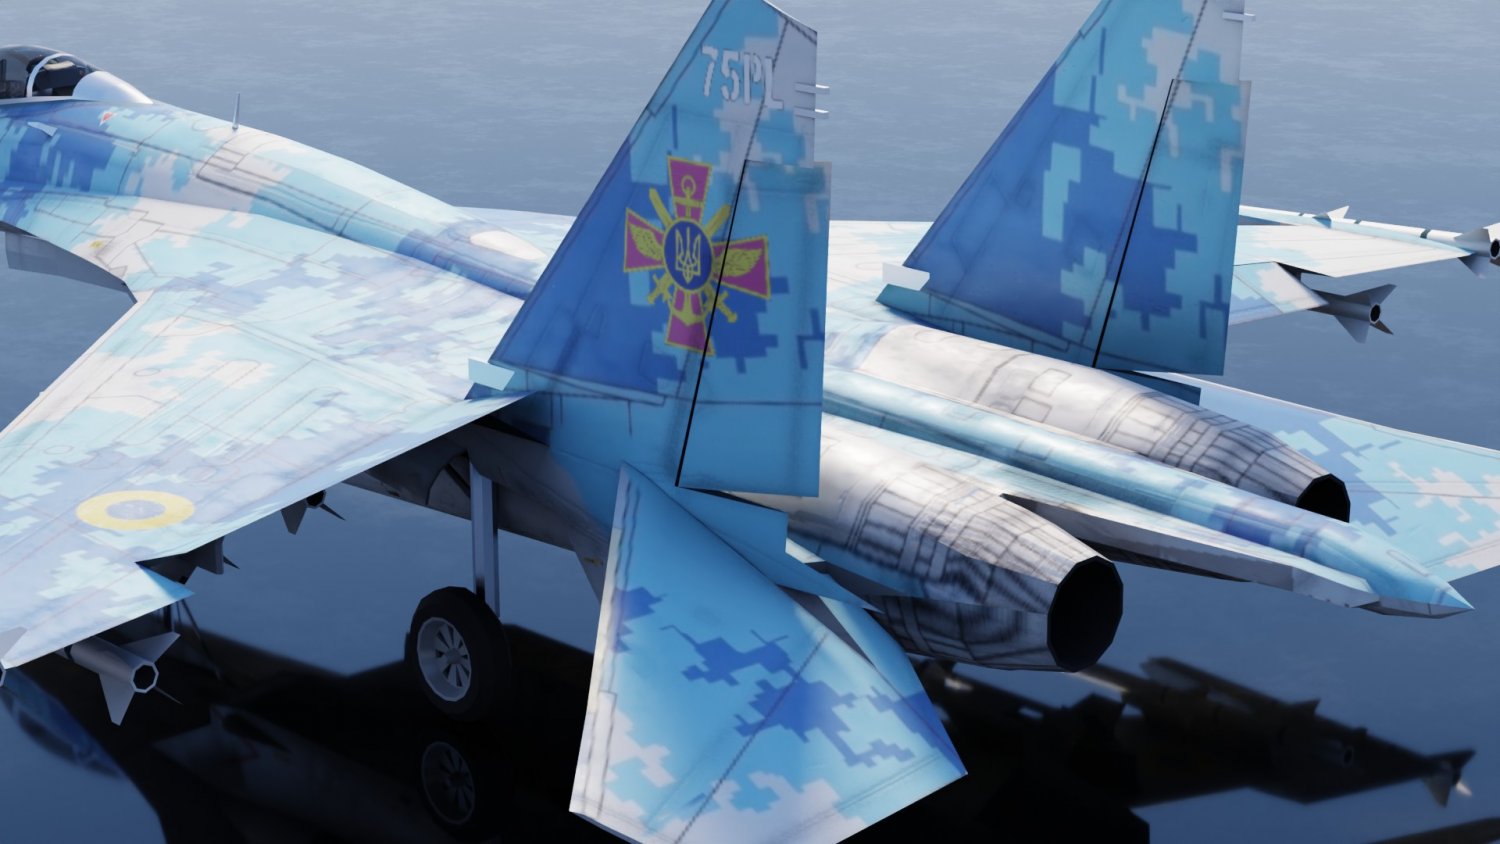 sukhoi su-27 flanker 3D Model in Fighter 3DExport